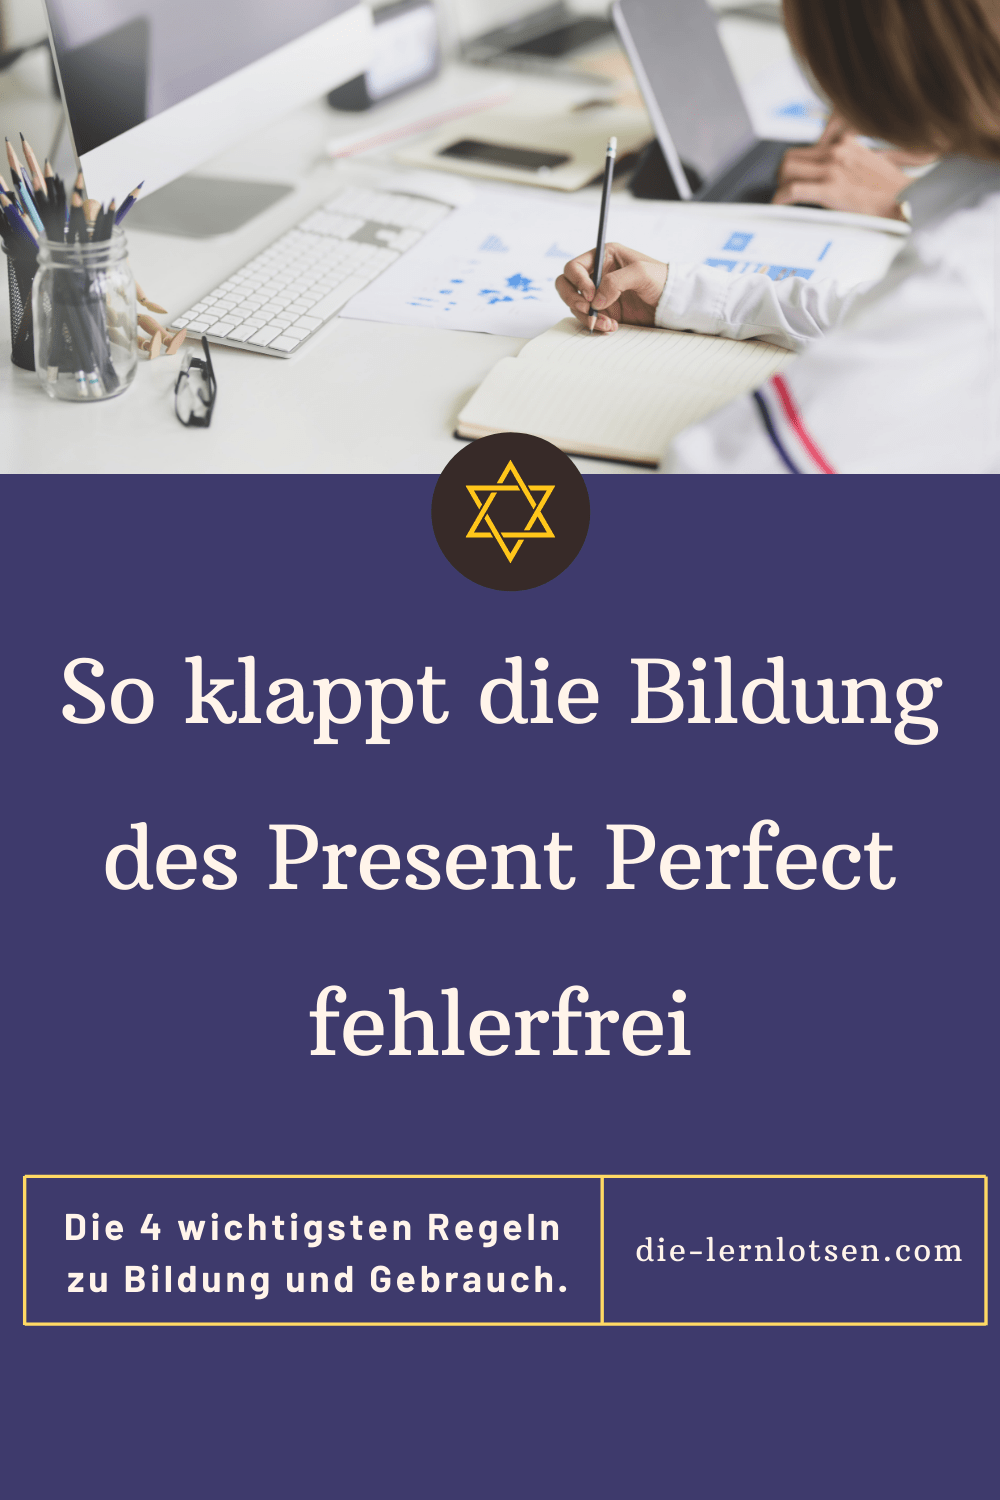 Die Bildung des Present Perfect